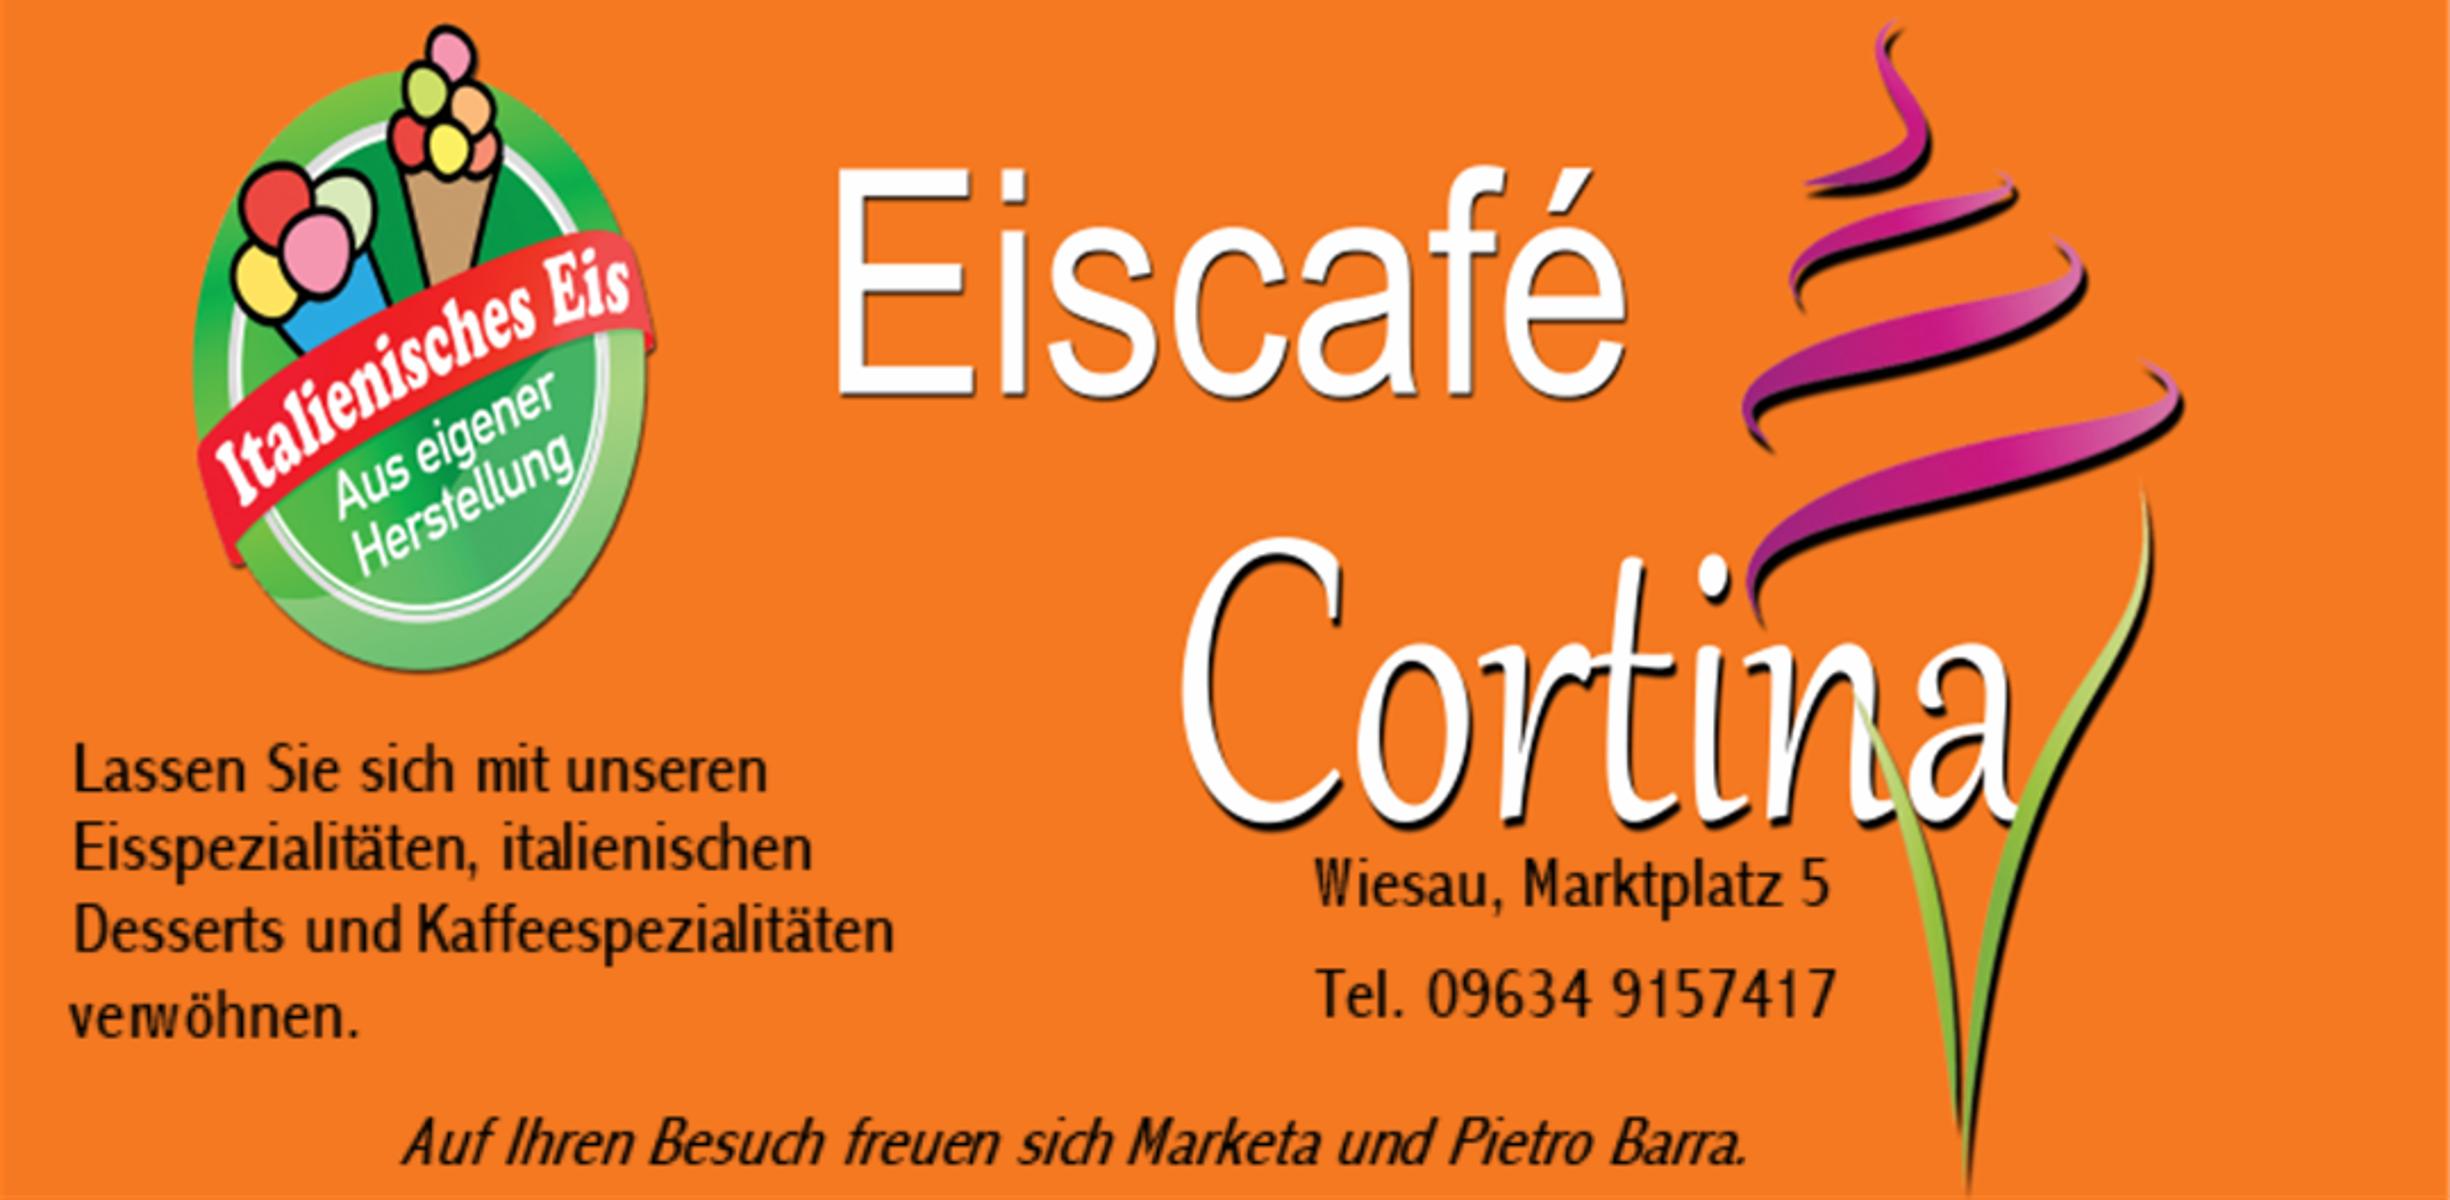 Herzlich willkommen im Eiscafé Cortina!
                 title=